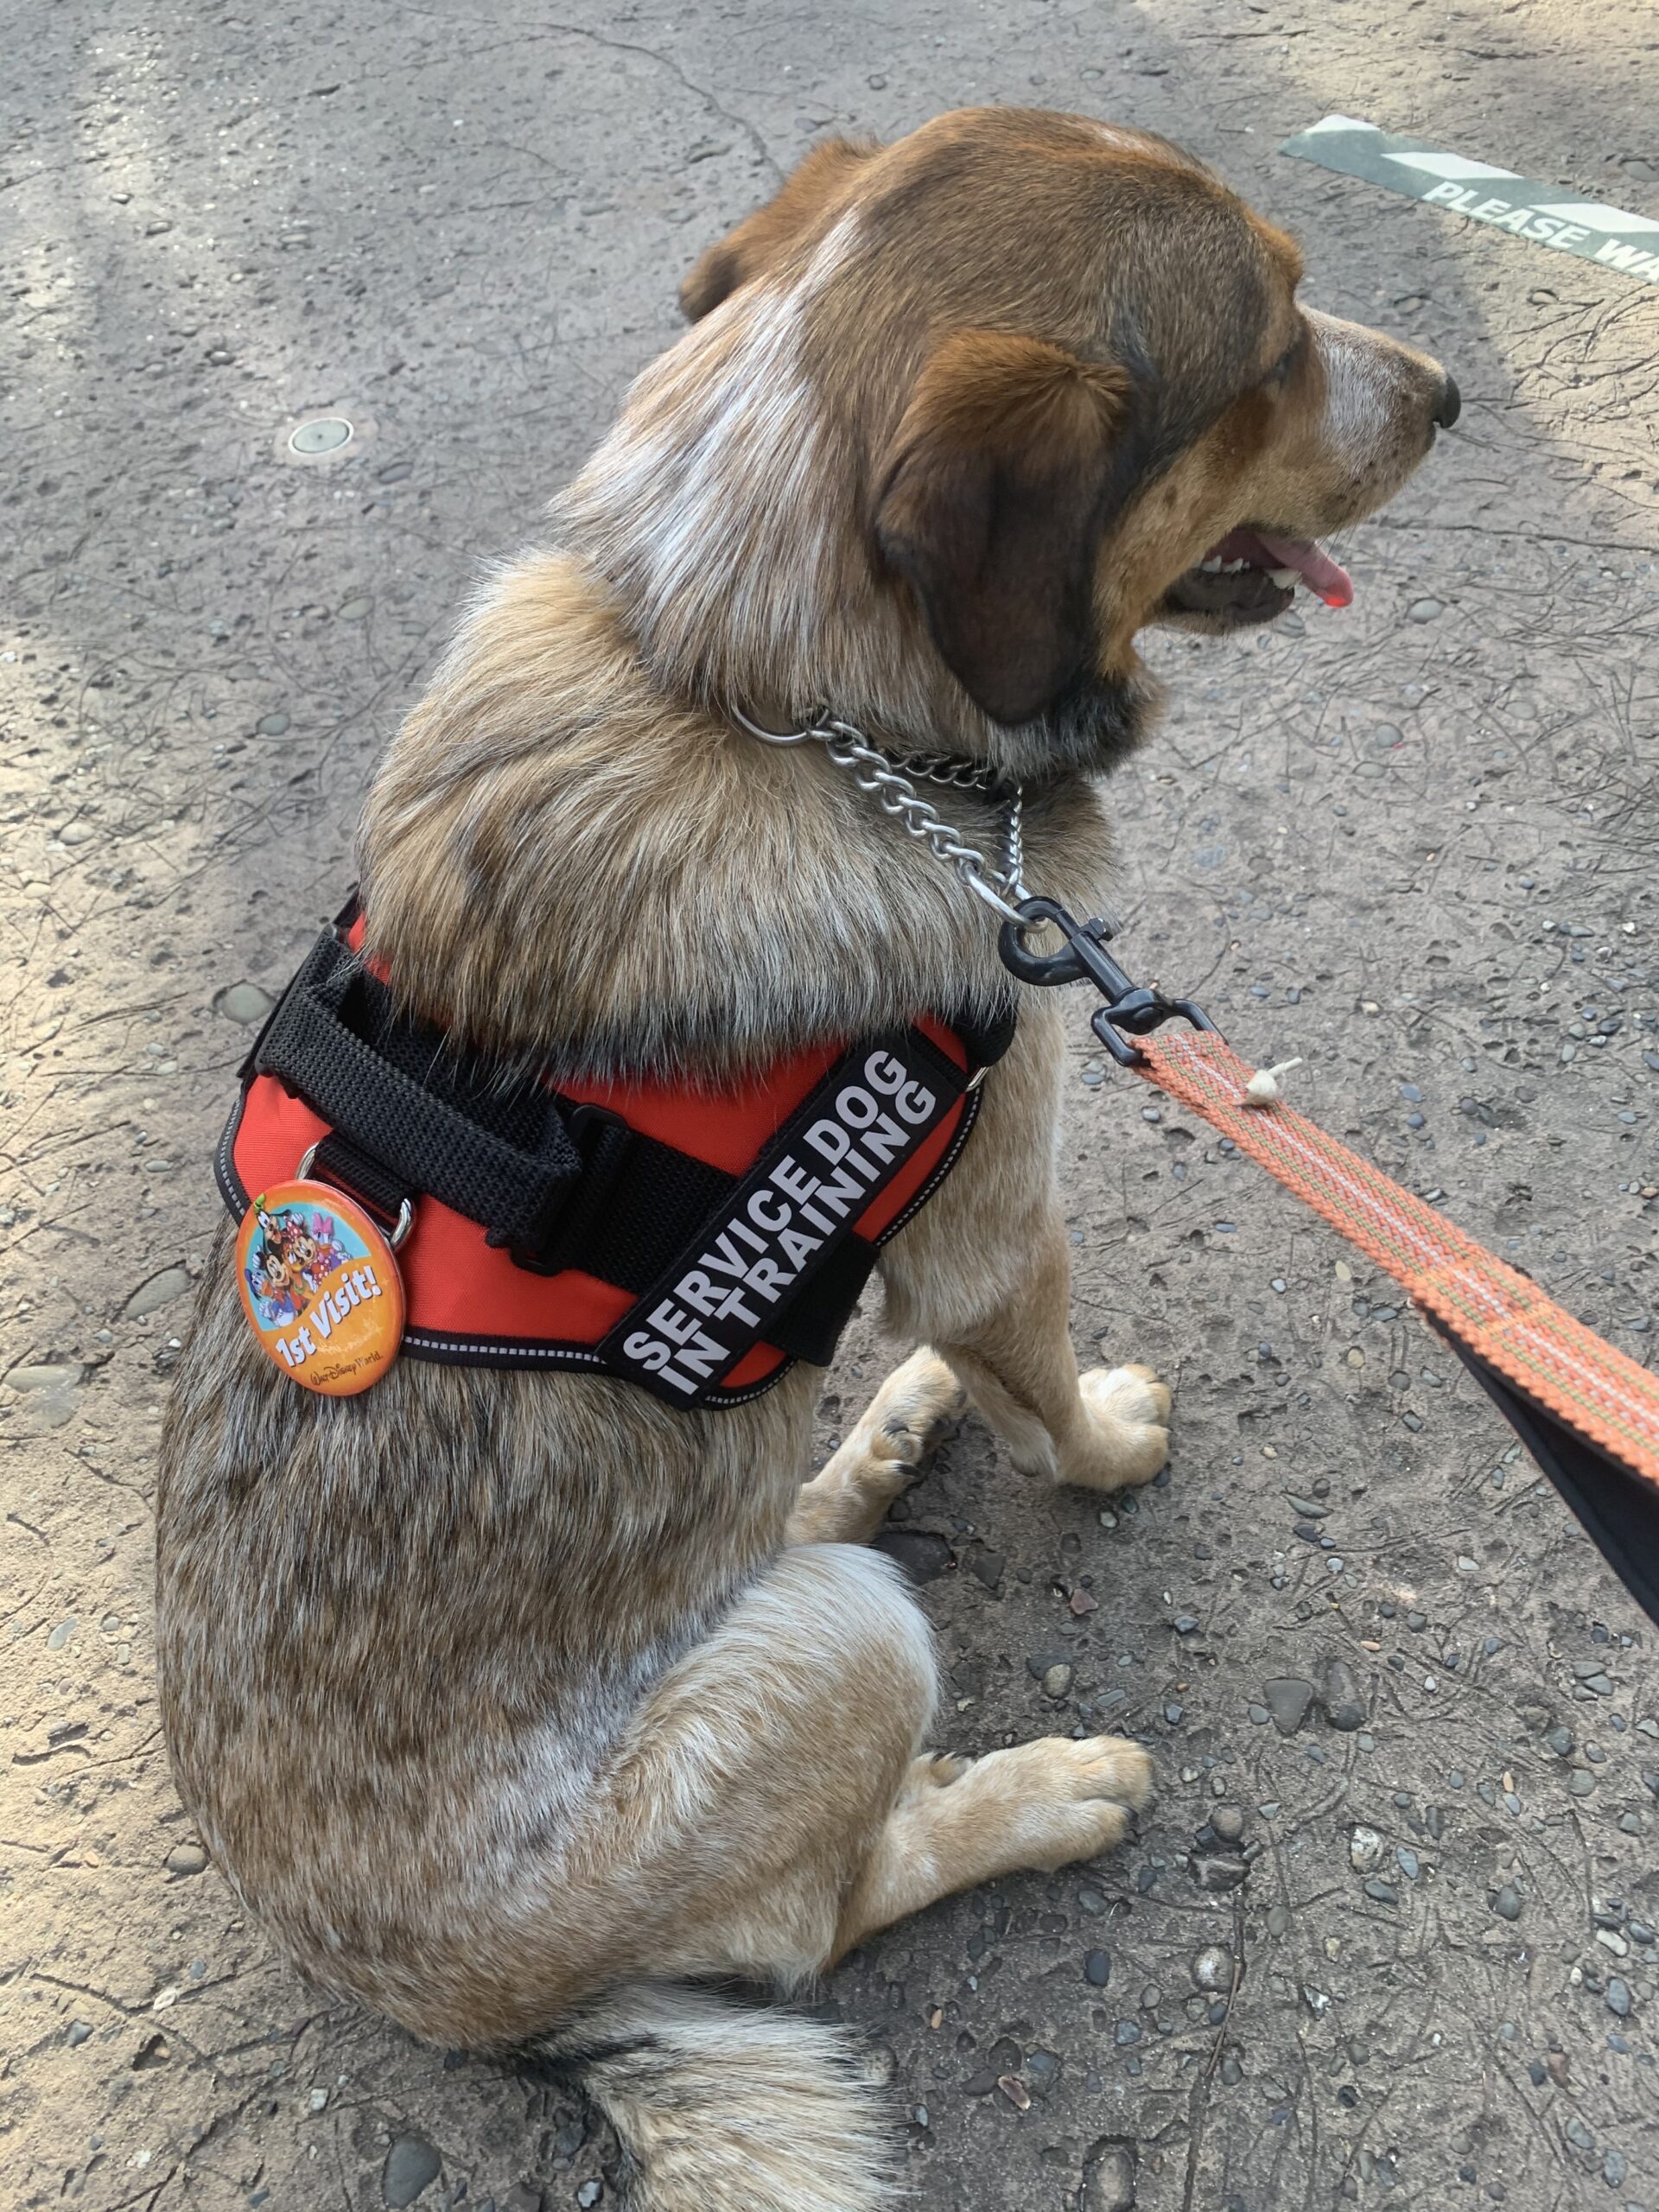 Pumpkin Service Dog in Training first visit